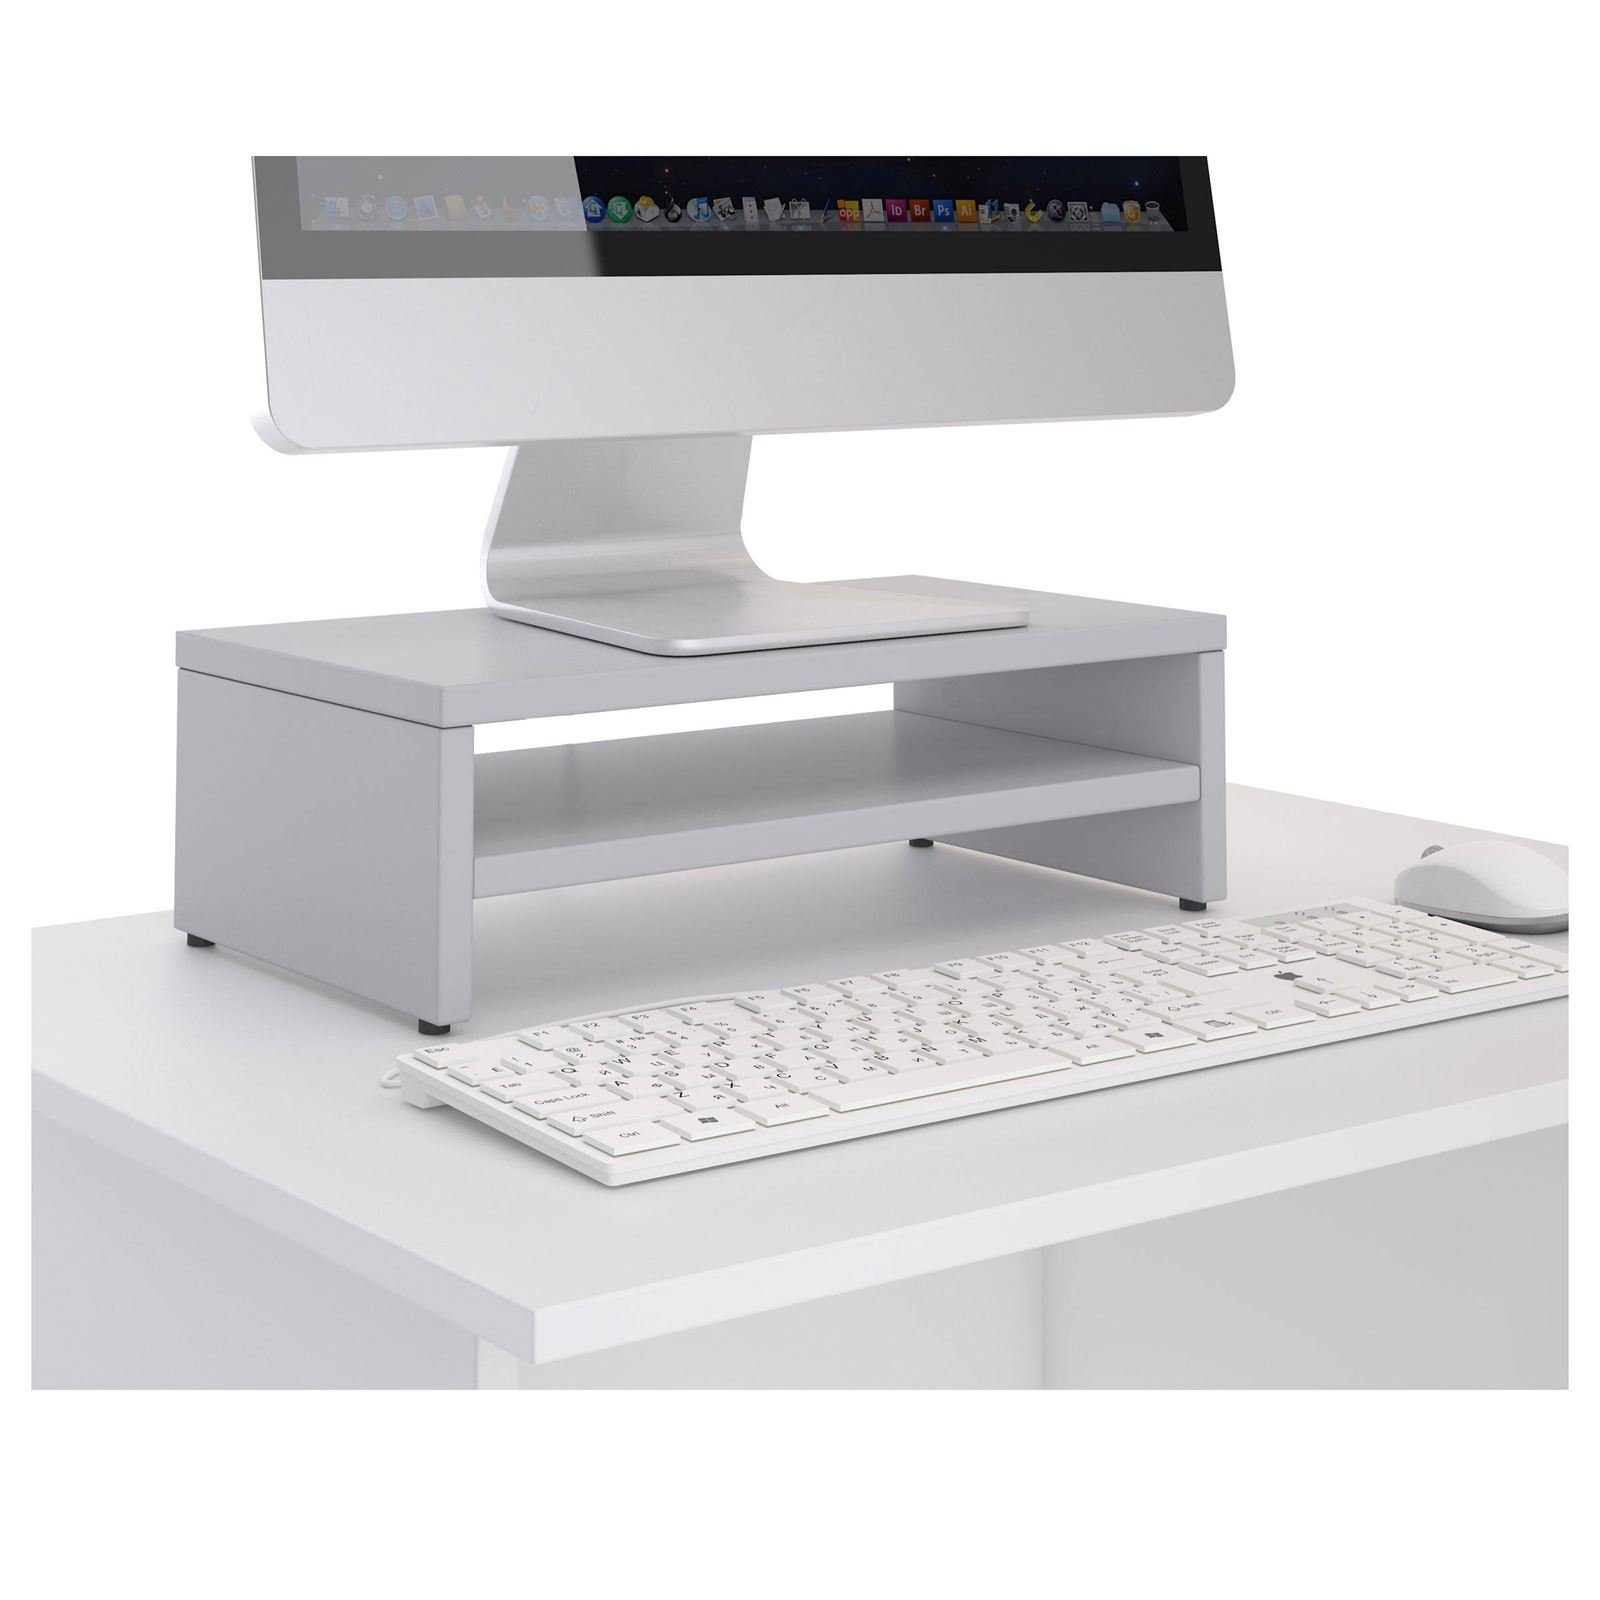 CARO-Möbel Schreibtischaufsatz SUBIDA, Monitorerhöhung Ablagefach Monitorständer Bildschirmaufsatz hellgrau inkl